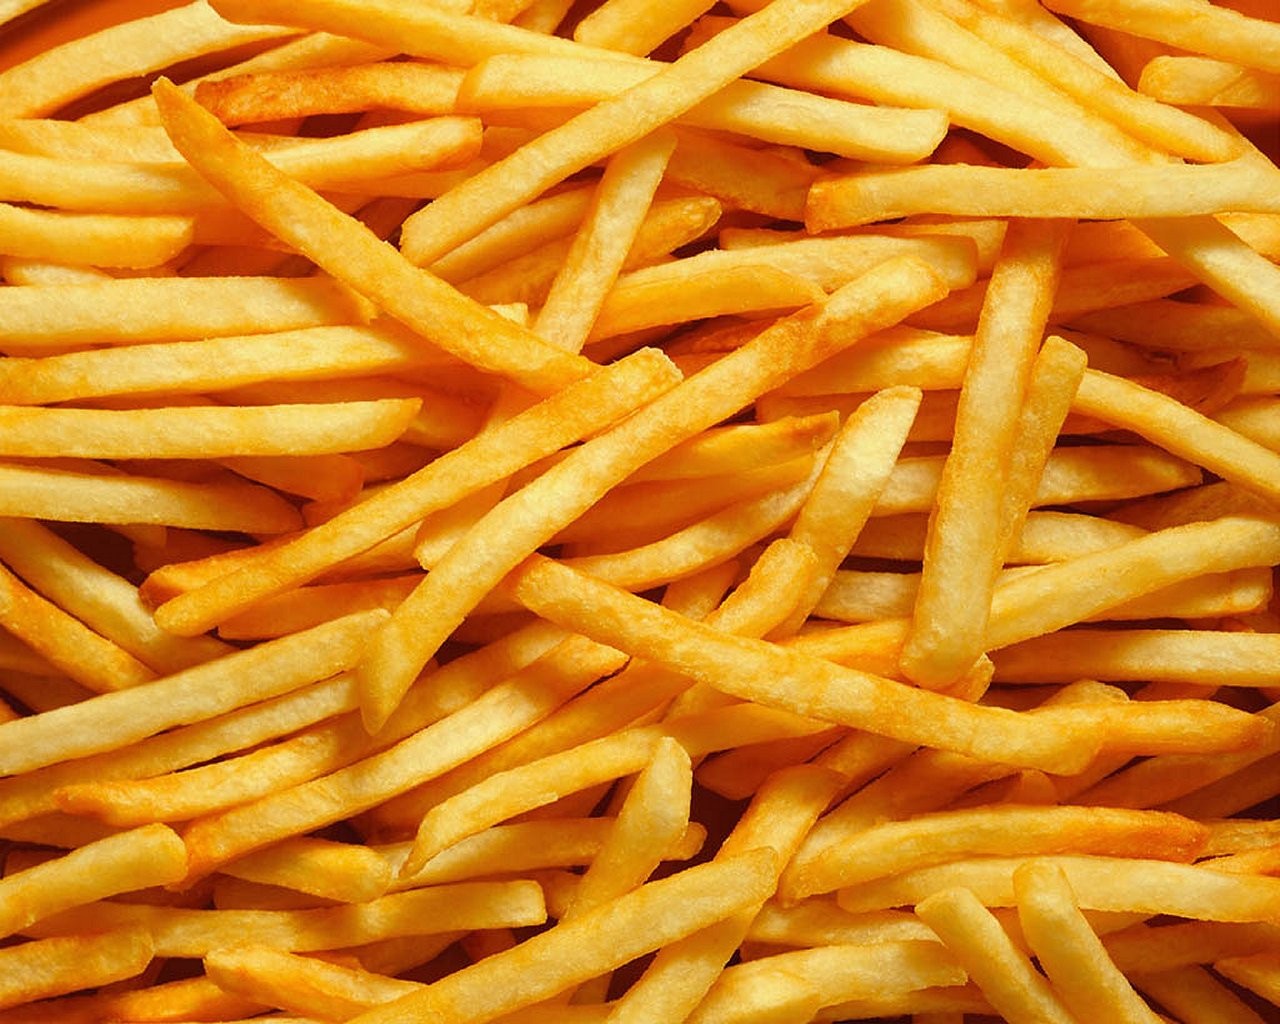 General 1280x1024 food fries macro yellow potatoes